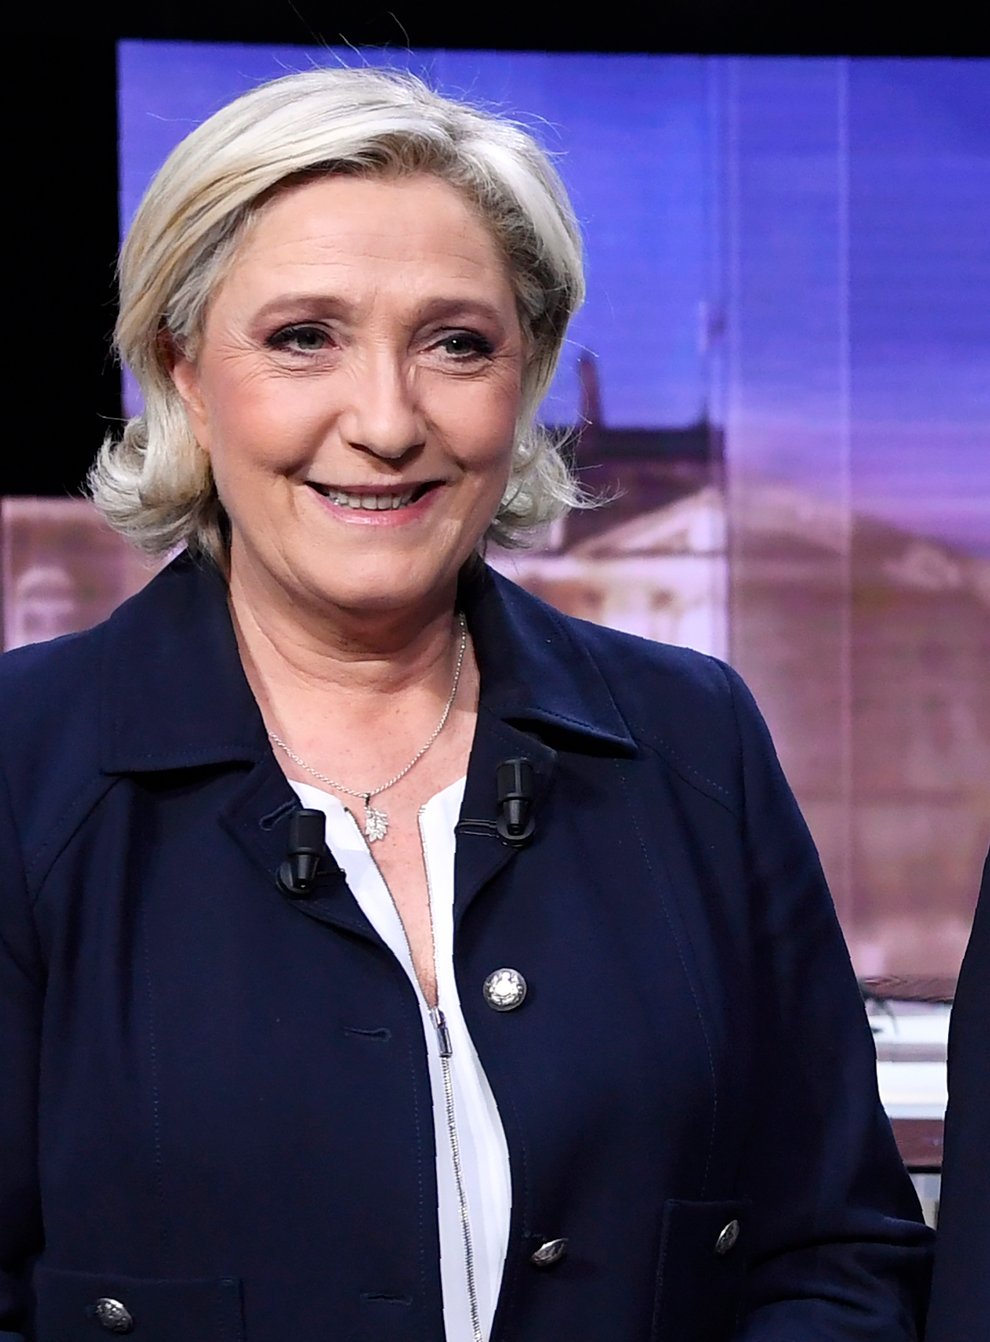 Marine Le Pen and Emmanuel Macron (Eric Feferberg/Pool Photo via AP)